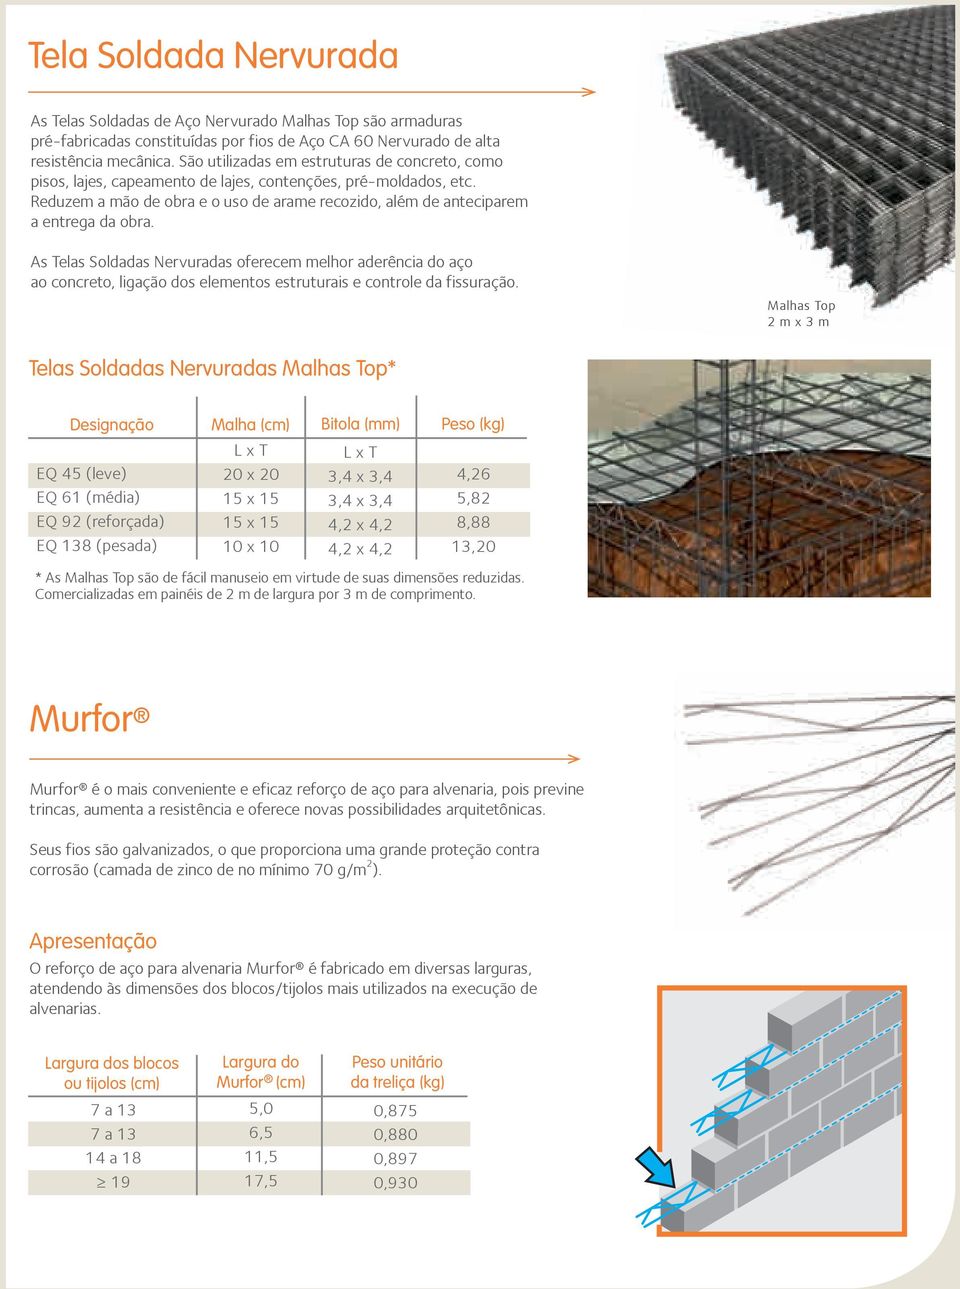 As Telas Soldadas Nervuradas oferecem melhor aderência do aço ao concreto, ligação dos elementos estruturais e controle da fissuração.